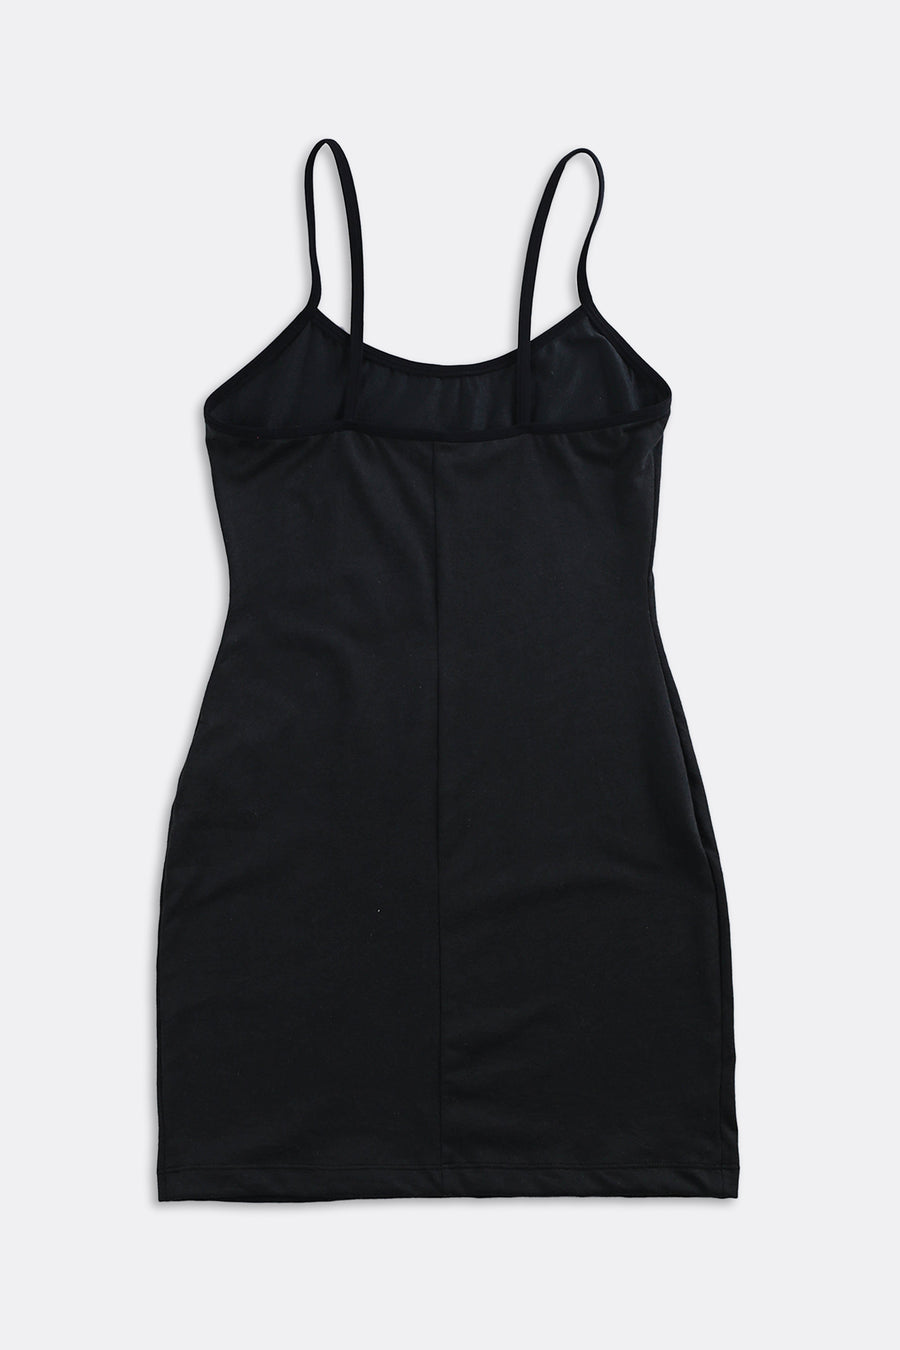 Rework Carhartt Mini Dress - XS, S, M, L, XL